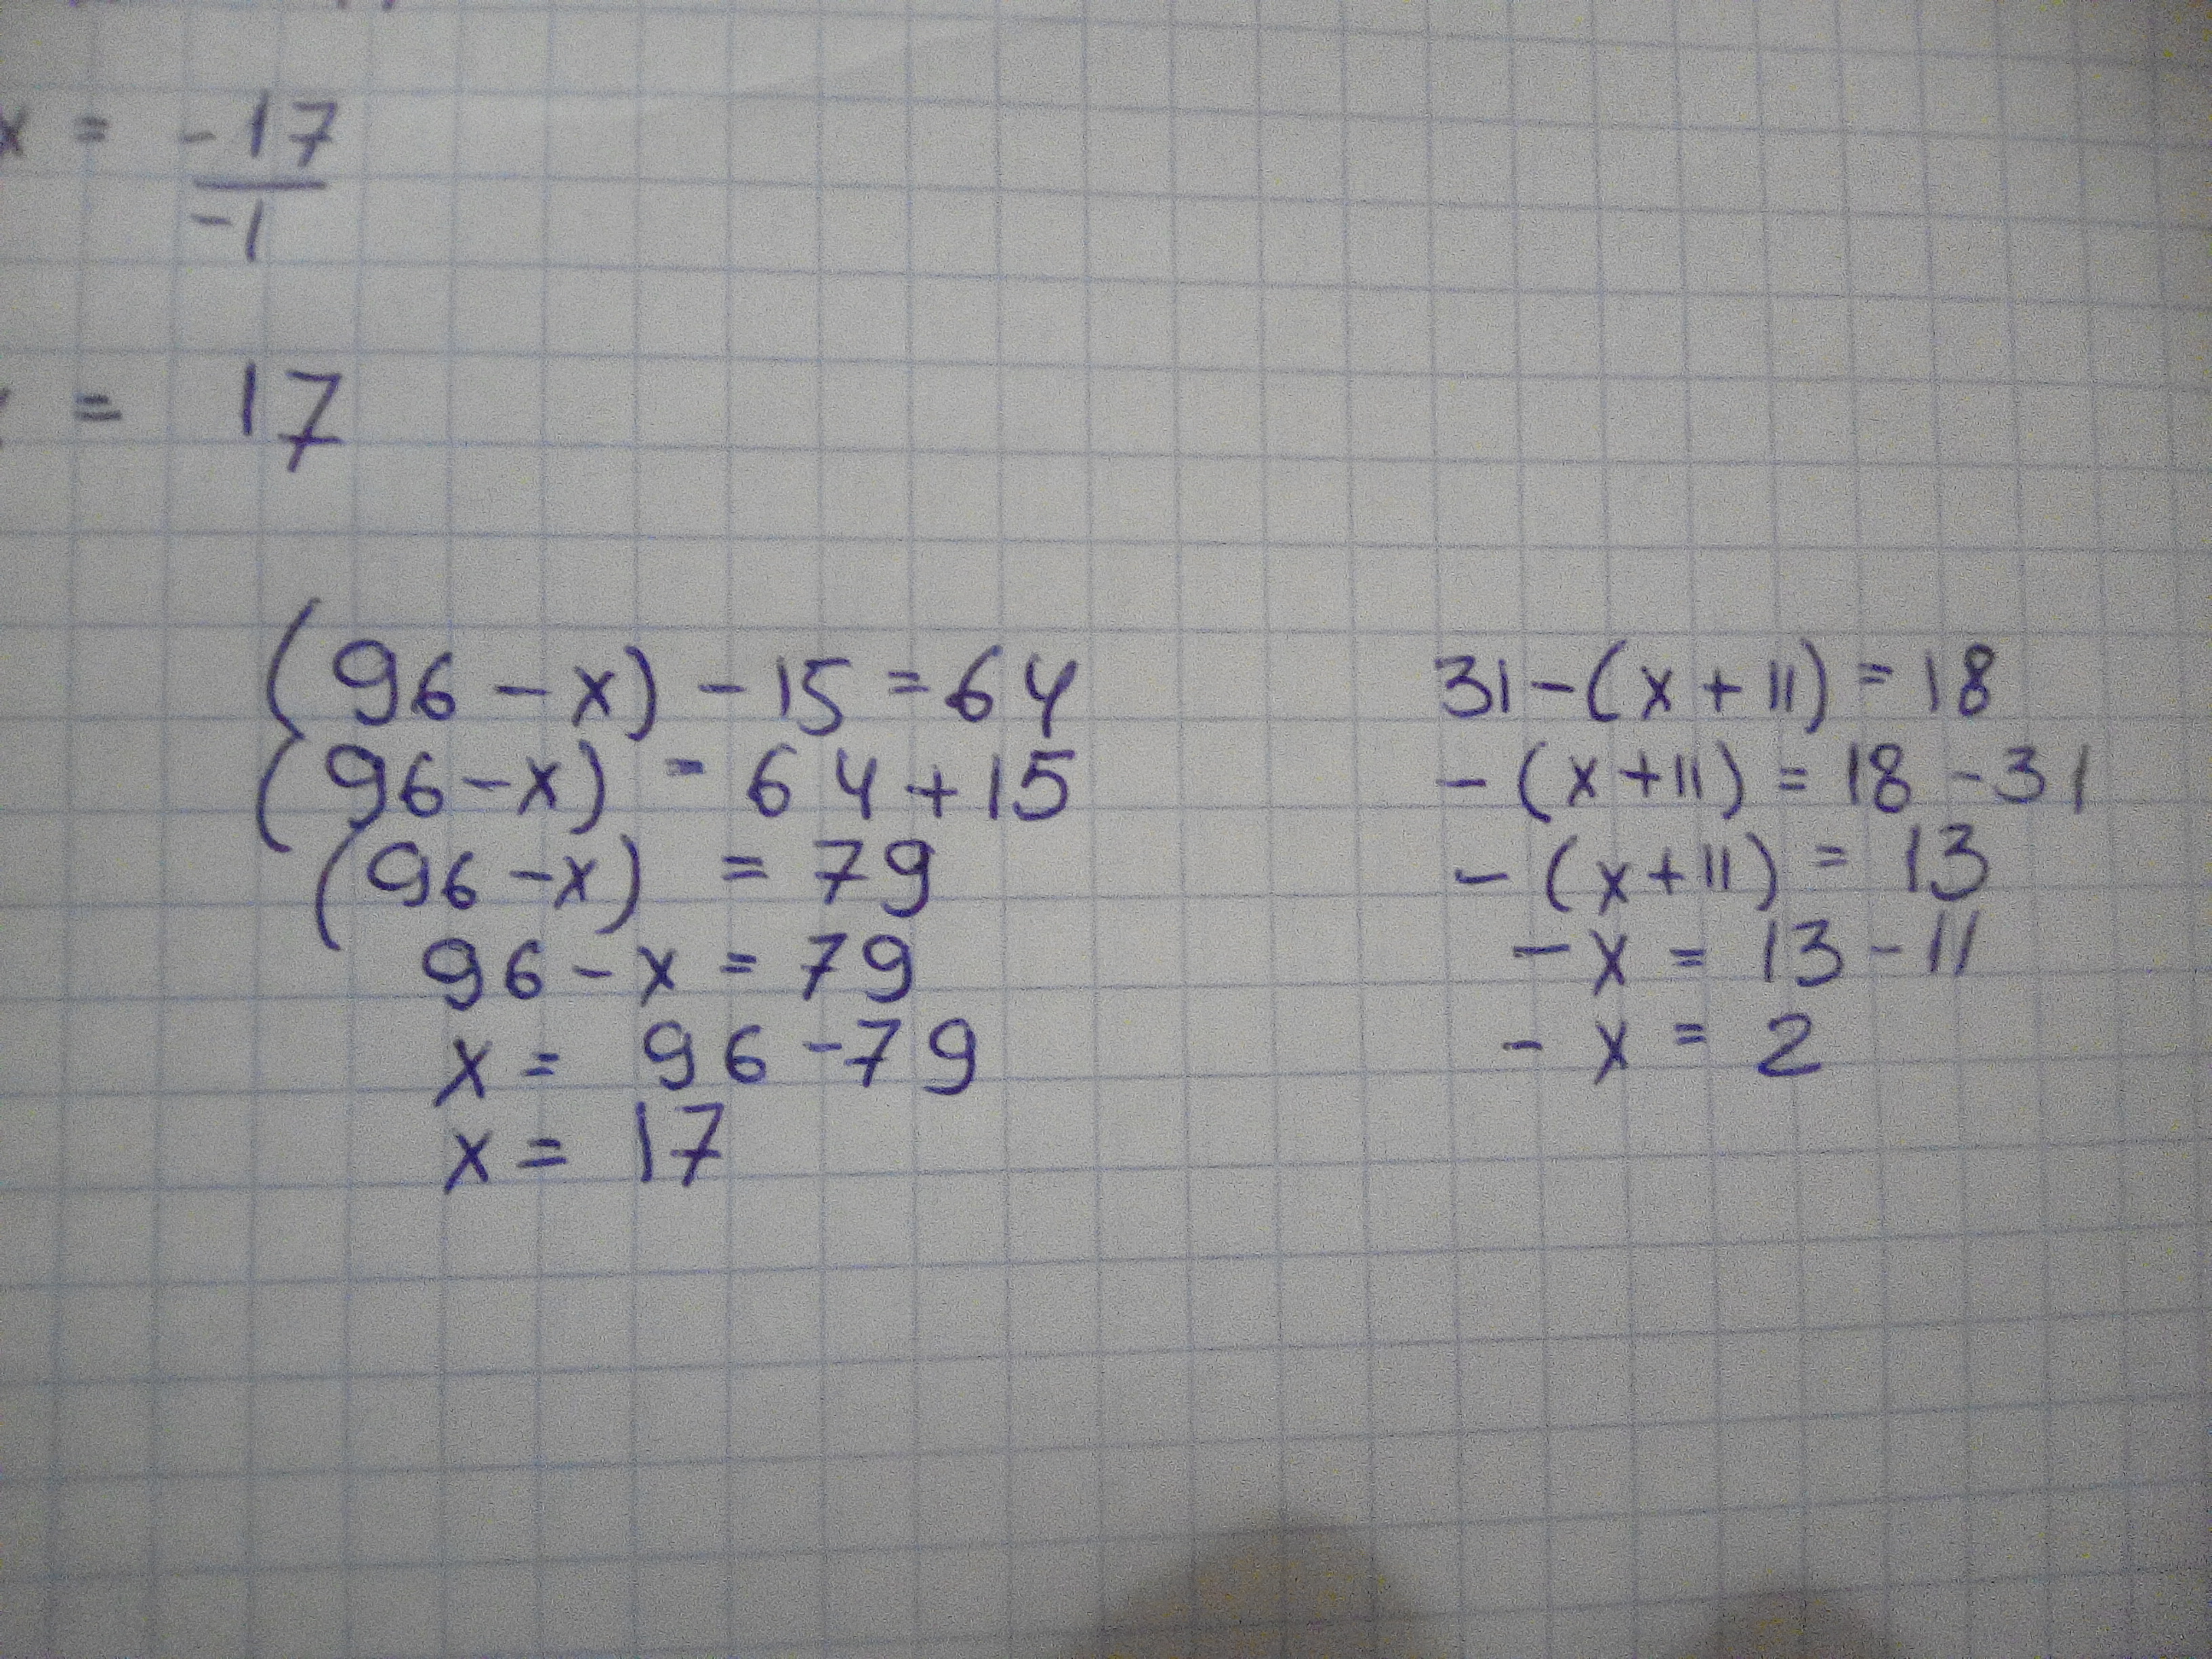 Реши уравнение 64 минус икс равно 64